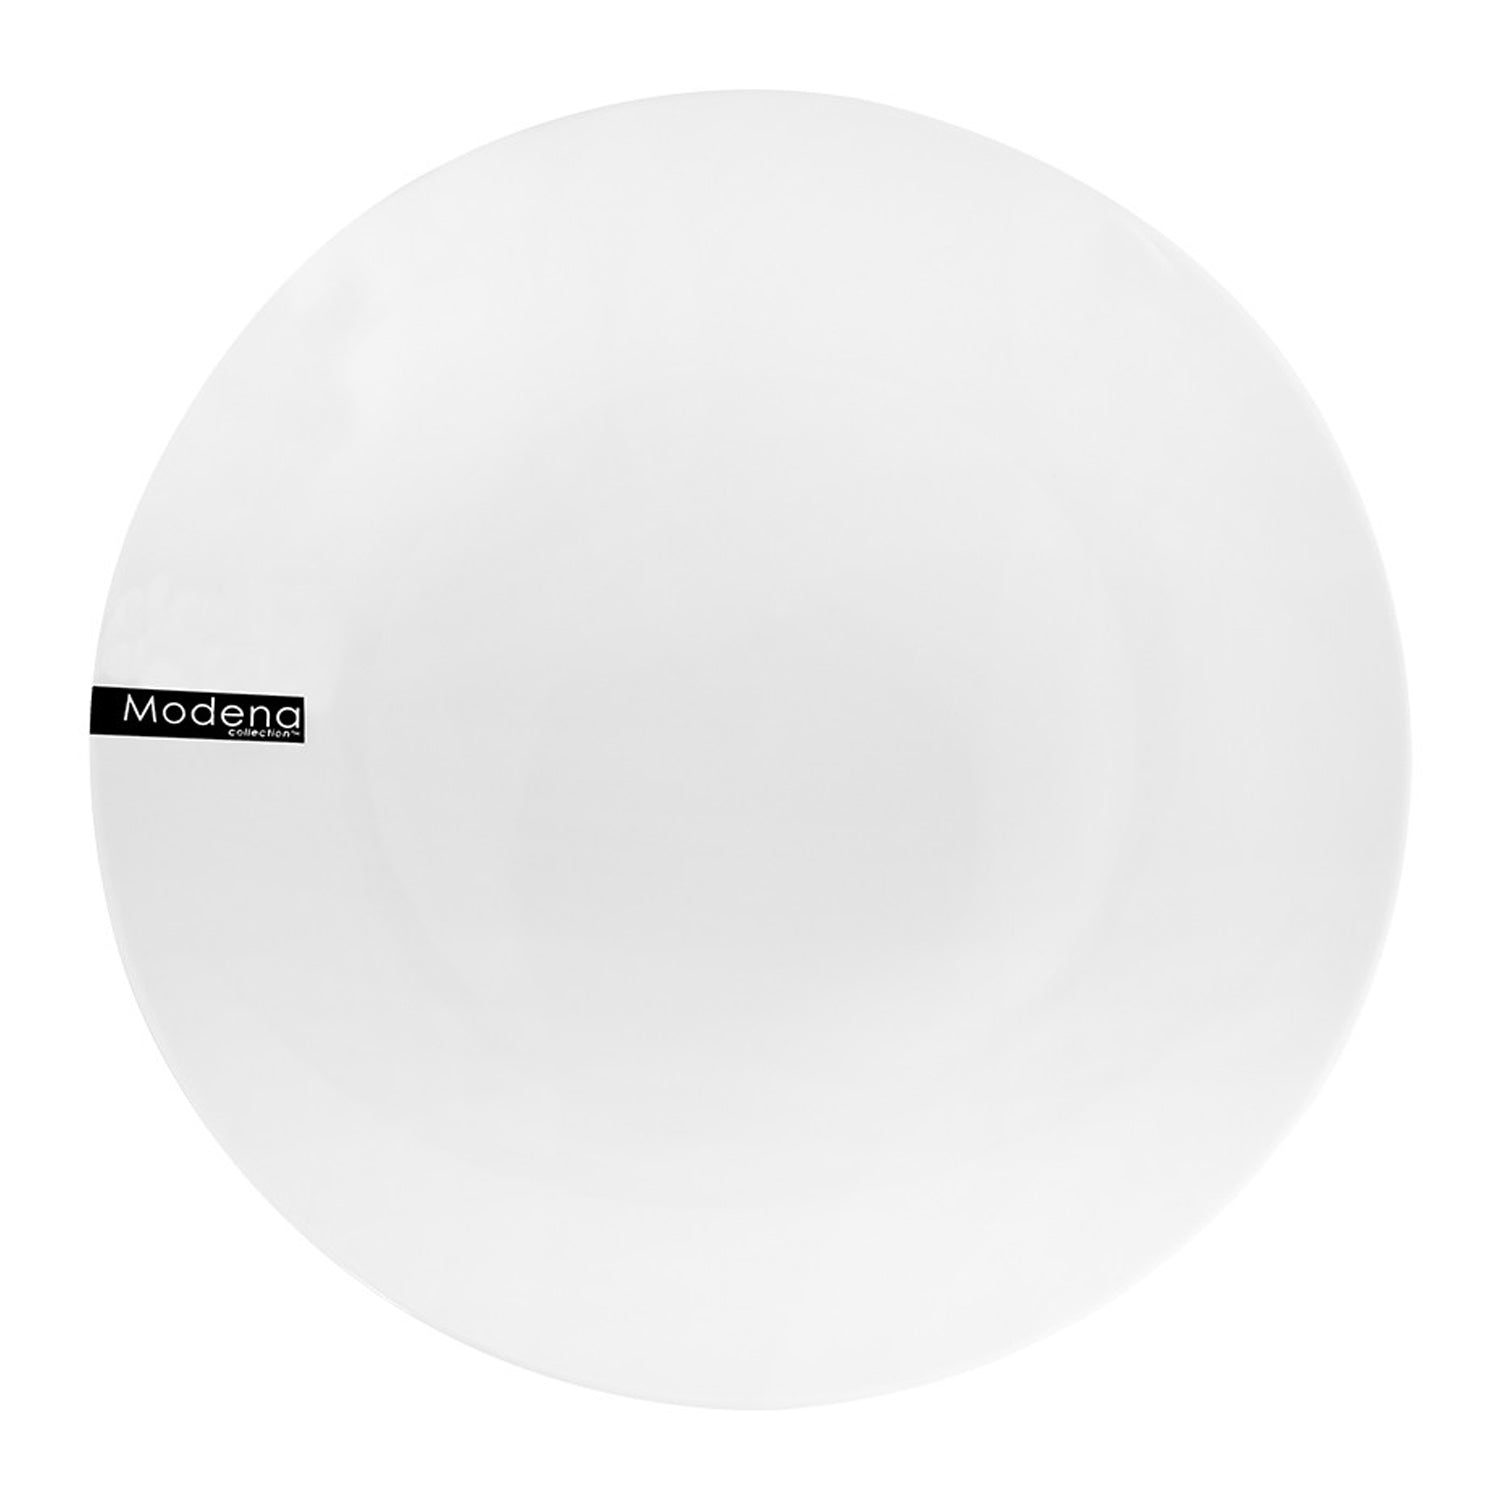 19cm White Porcelain Side Plate